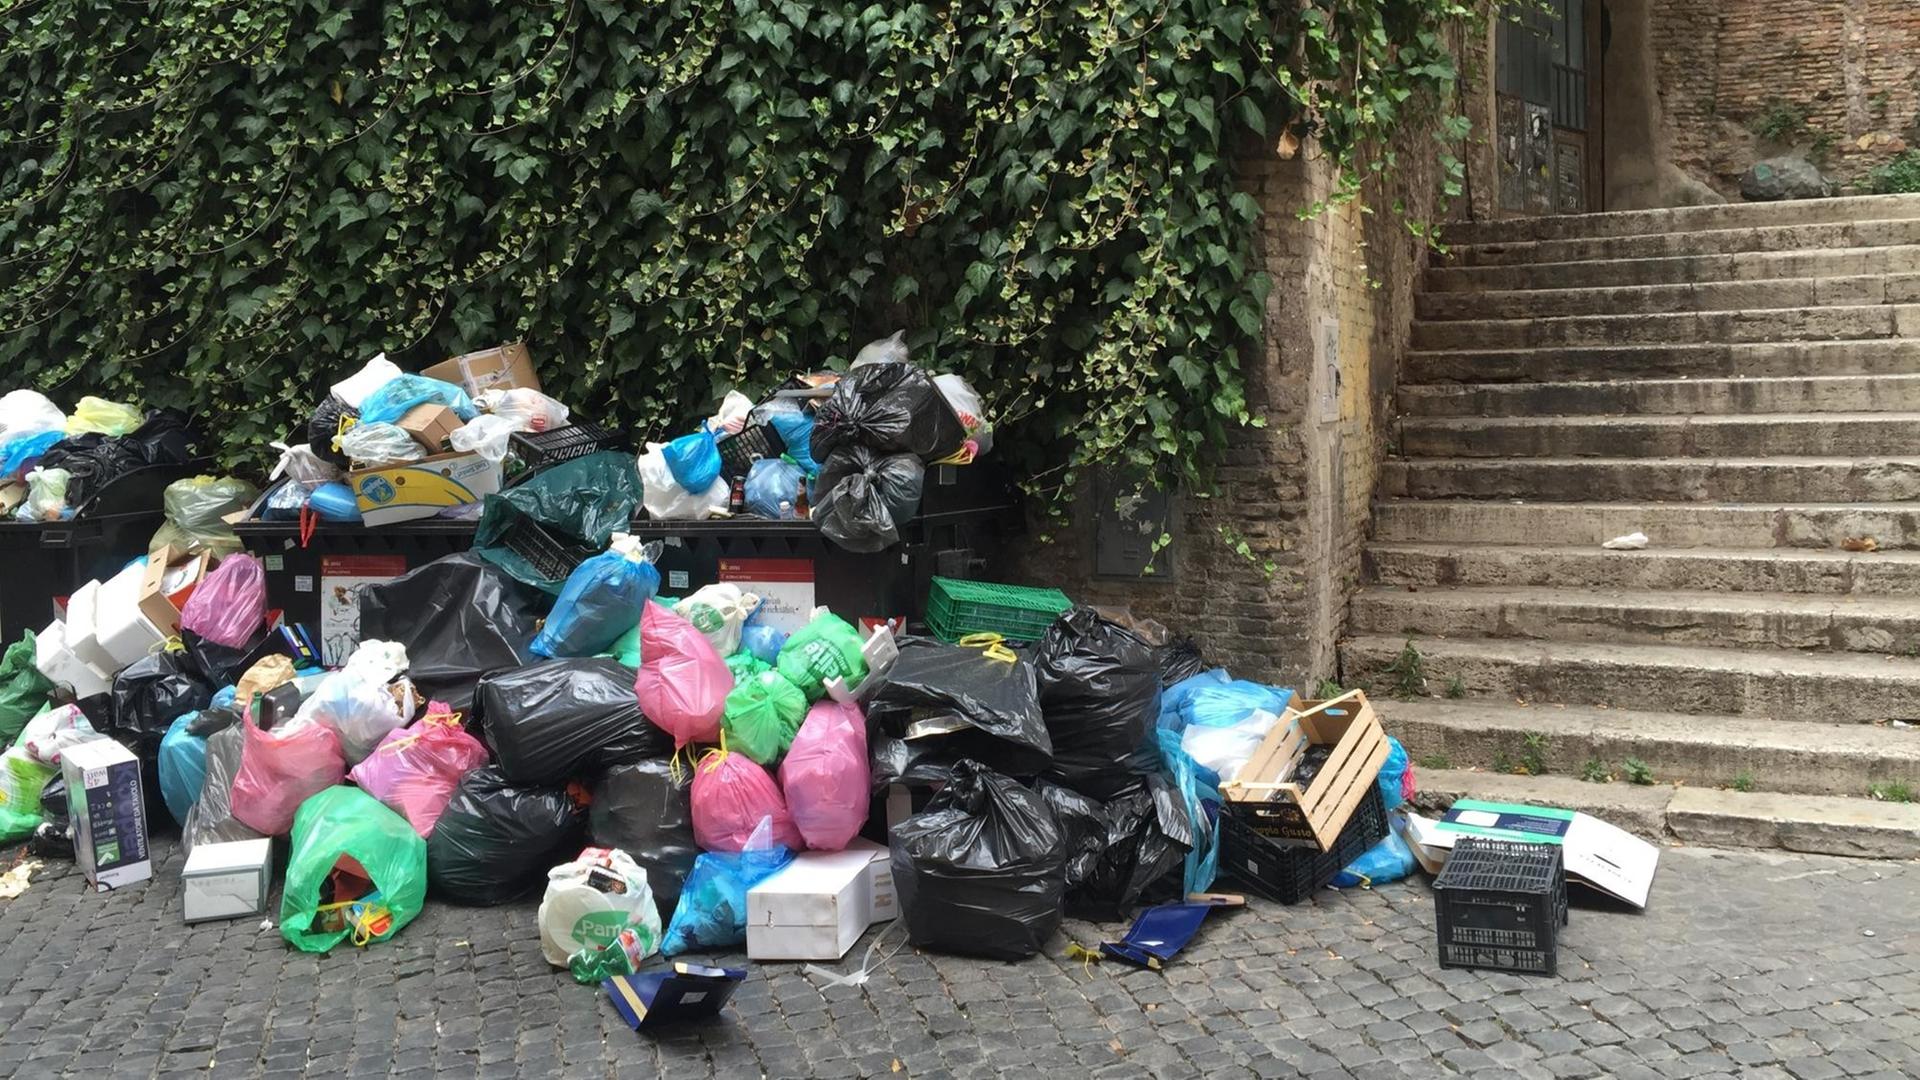 Überfüllte Müllcontainer am Straßenrand von Rom.